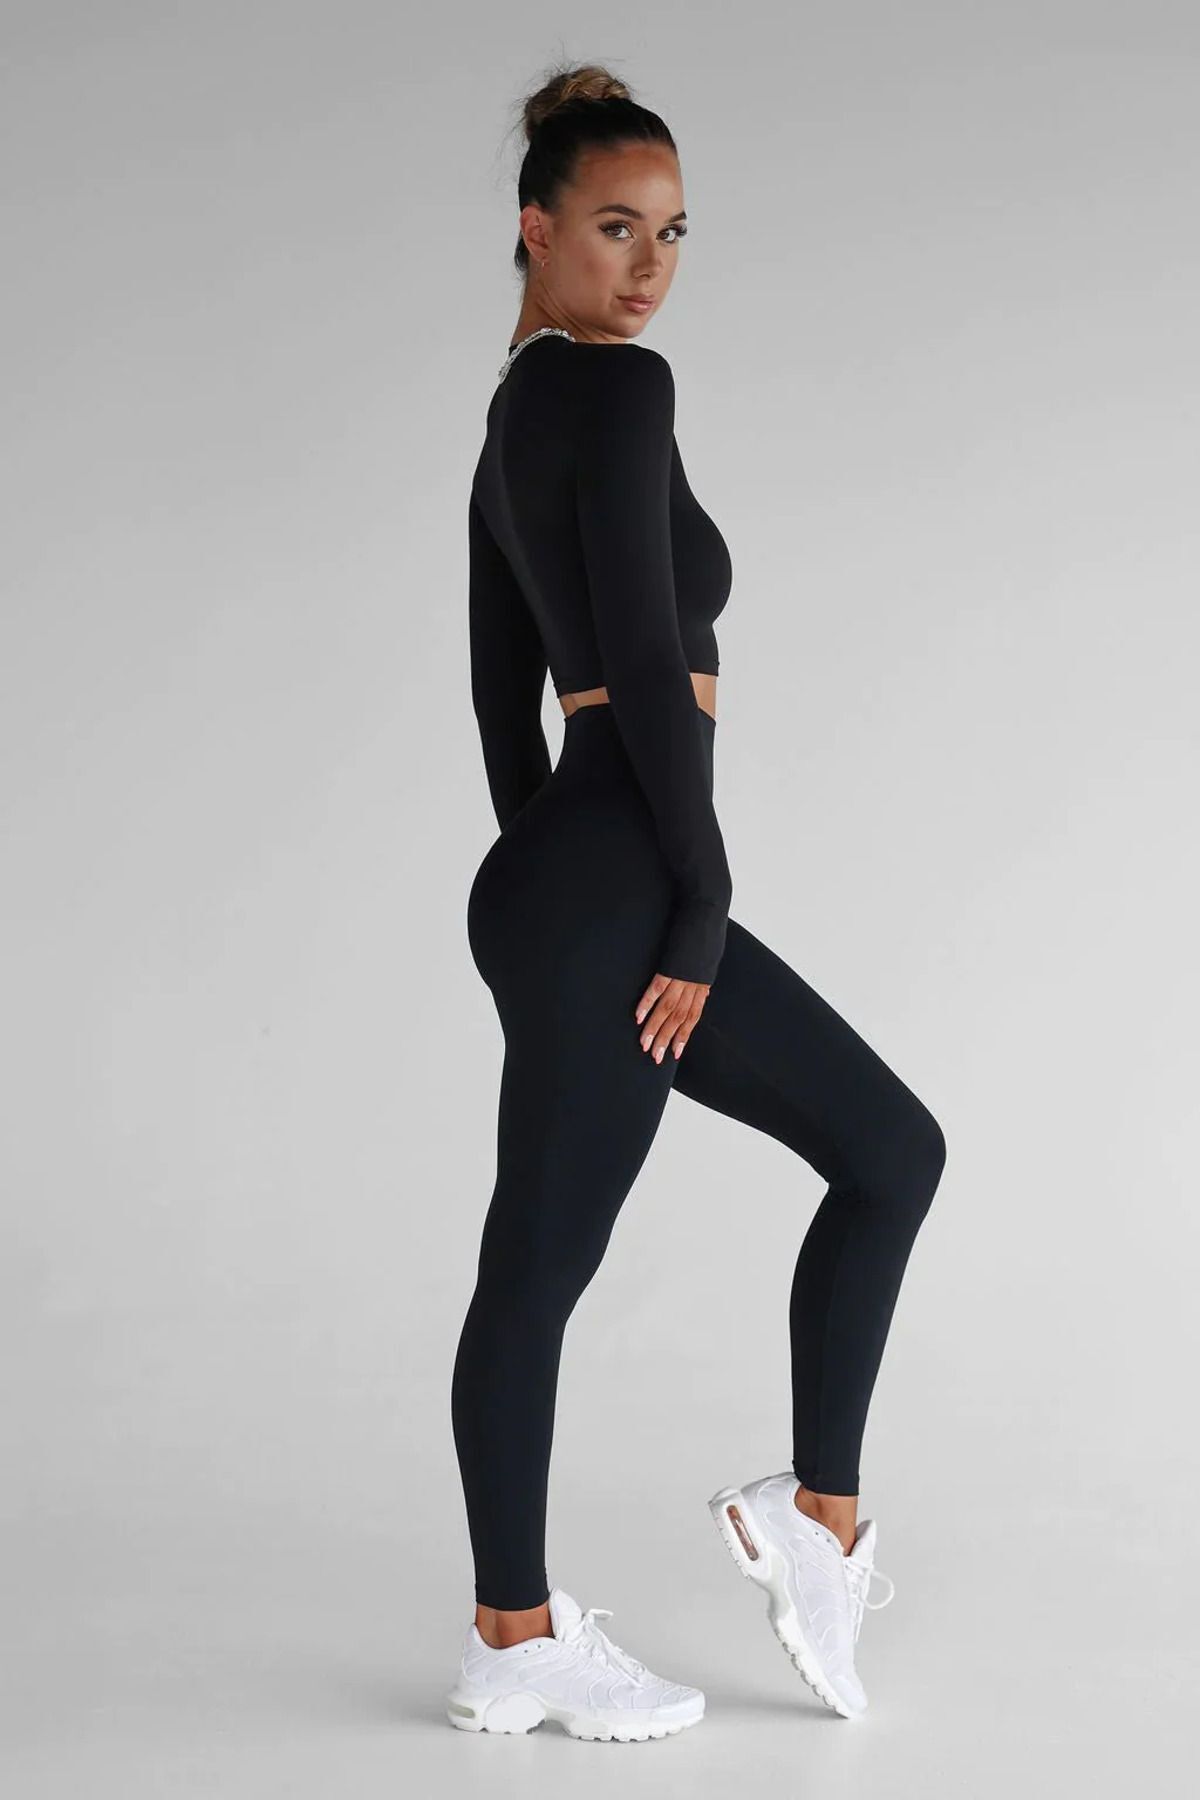 bysevensail Kadın Siyah Yüksek Bel Toparlayıcı Tayt Yüksek Kalite Spor Ve Günlük Kullanım Tayt